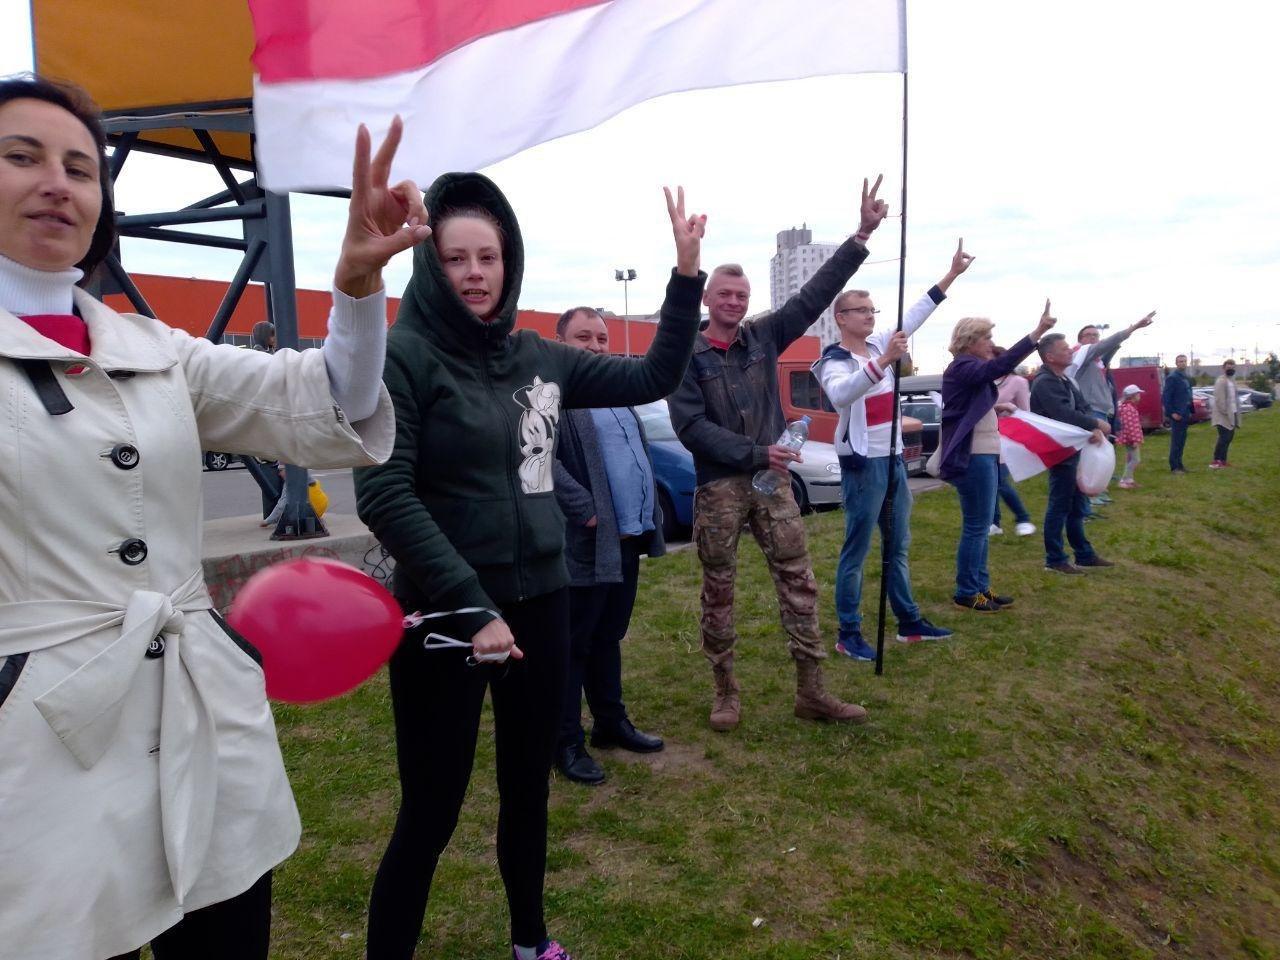 В разных точках Минска возобновились акции протеста